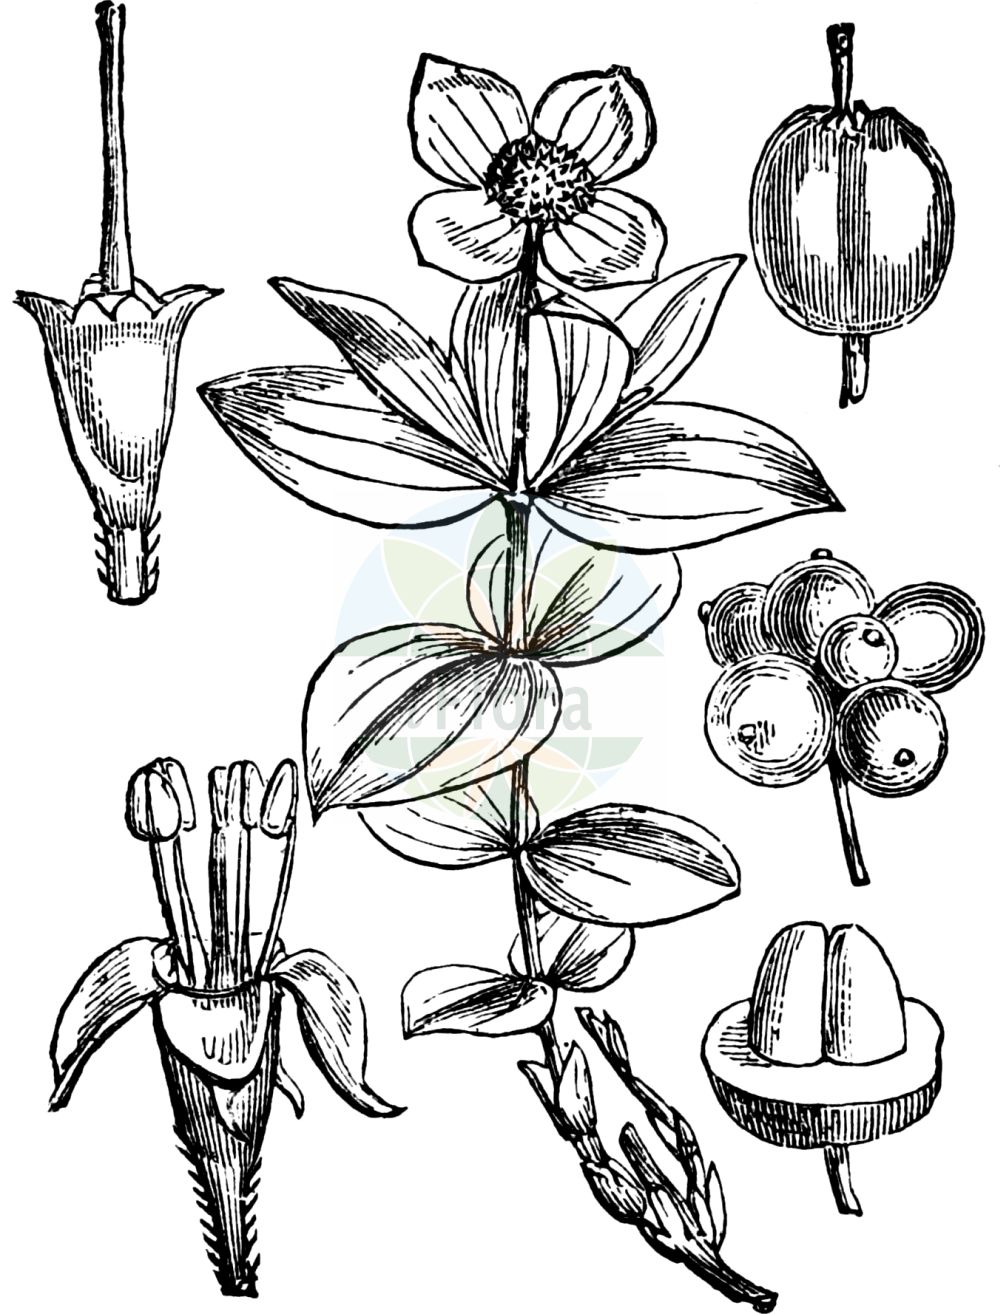 Historische Abbildung von Cornus suecica (Schwedischer Hartriegel - Dwarf Cornel). Das Bild zeigt Blatt, Bluete, Frucht und Same. ---- Historical Drawing of Cornus suecica (Schwedischer Hartriegel - Dwarf Cornel). The image is showing leaf, flower, fruit and seed.(Cornus suecica,Schwedischer Hartriegel,Dwarf Cornel,Arctocrania suecica,Chamaepericlymenum suecicum,Cornella suecica,Cornus biramis,Cornus borealis,Cornus herbacea,Cornus instolonea,Cornus suecica,Eukrania suecica,Ossea instolonea,Swida instolonea,Thelycrania instolonea,Schwedischer Hartriegel,Dwarf Cornel,Lapland Cornel,Cornus,Hartriegel,Cornel,Cornaceae,Hartriegelgewächse,Dogwood family,Blatt,Bluete,Frucht,Same,leaf,flower,fruit,seed,Fitch et al. (1880))